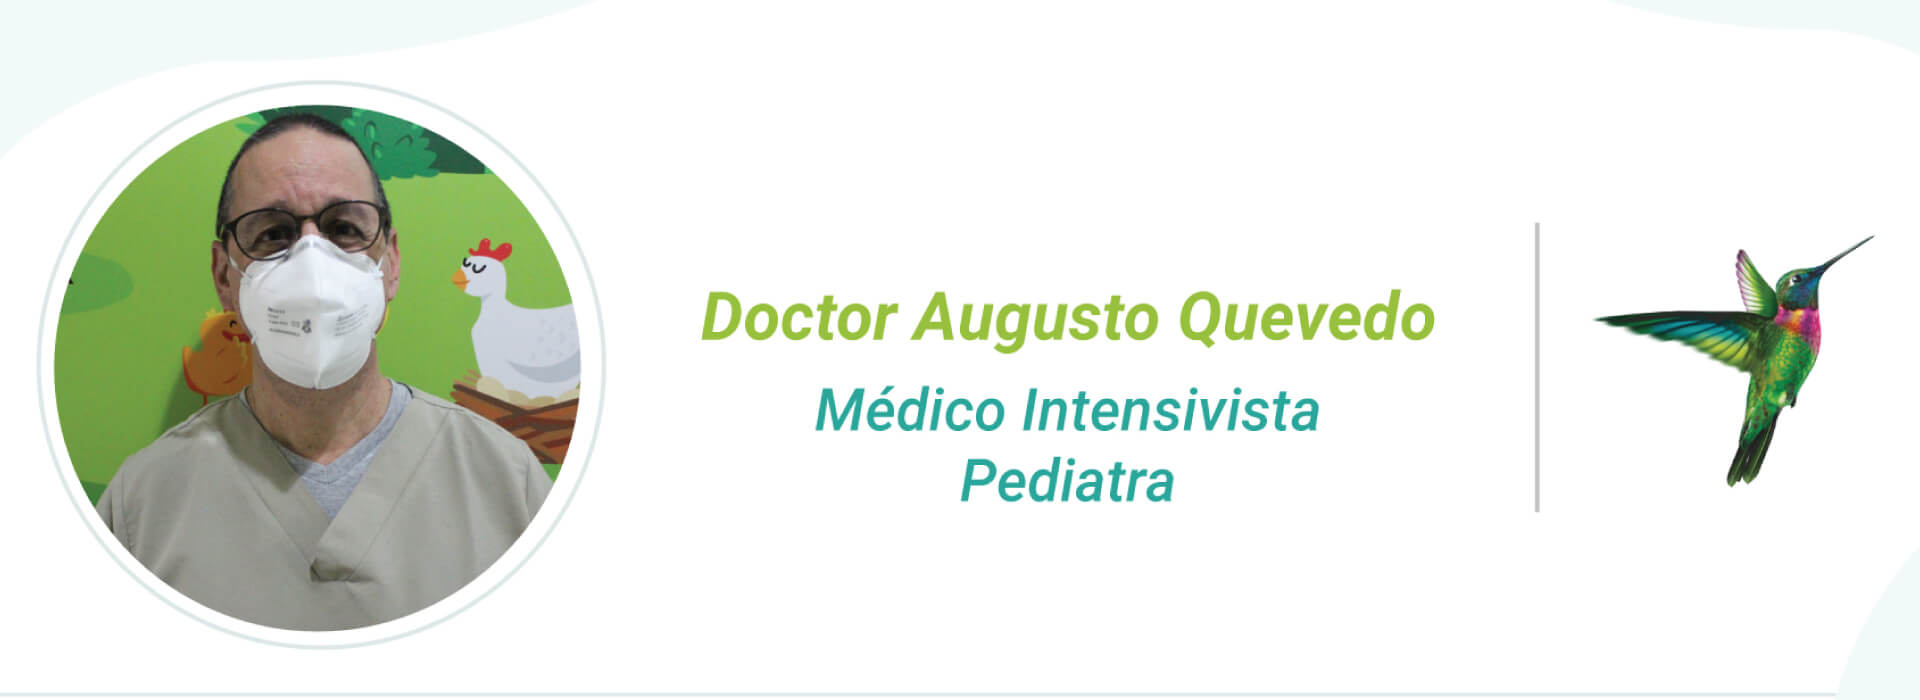 Gráfico del doctor Augusto Quevedo